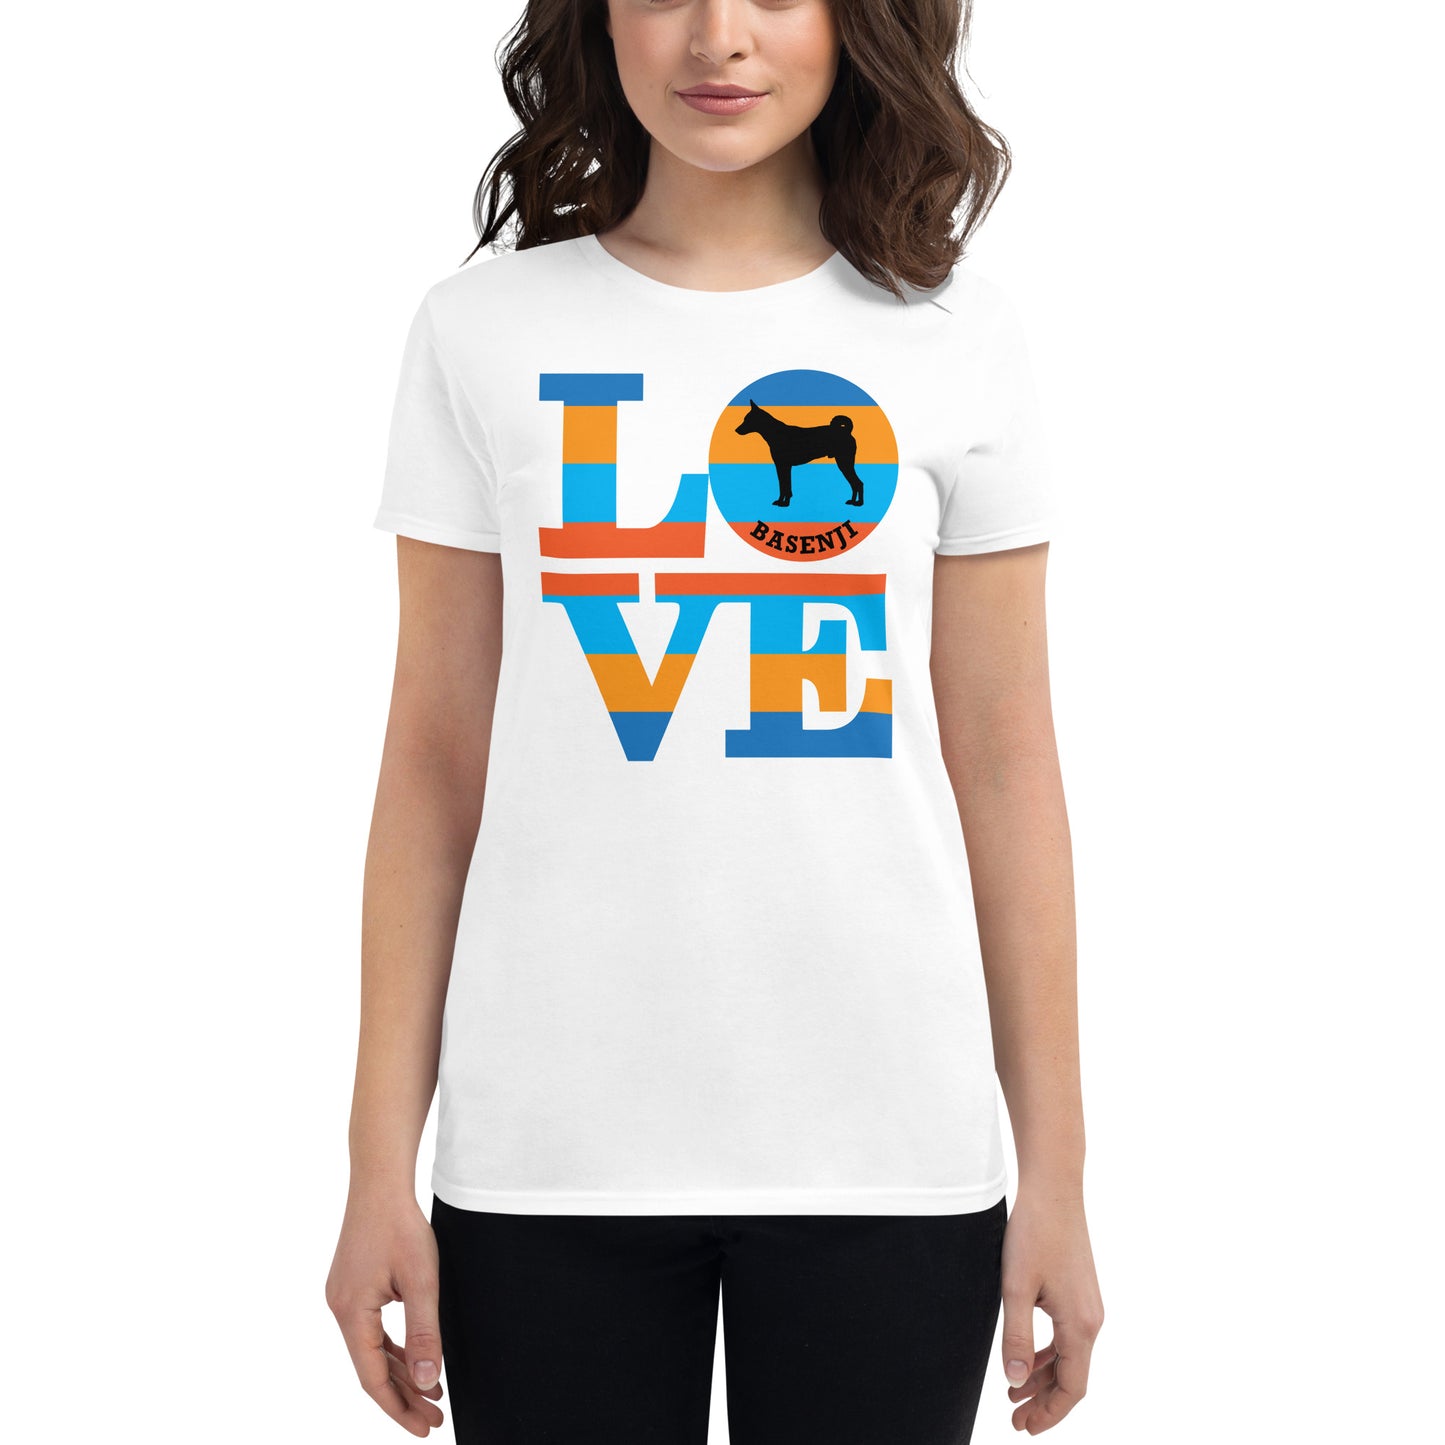 Basenji Love women’s white t-shirt by Dog Artistry.